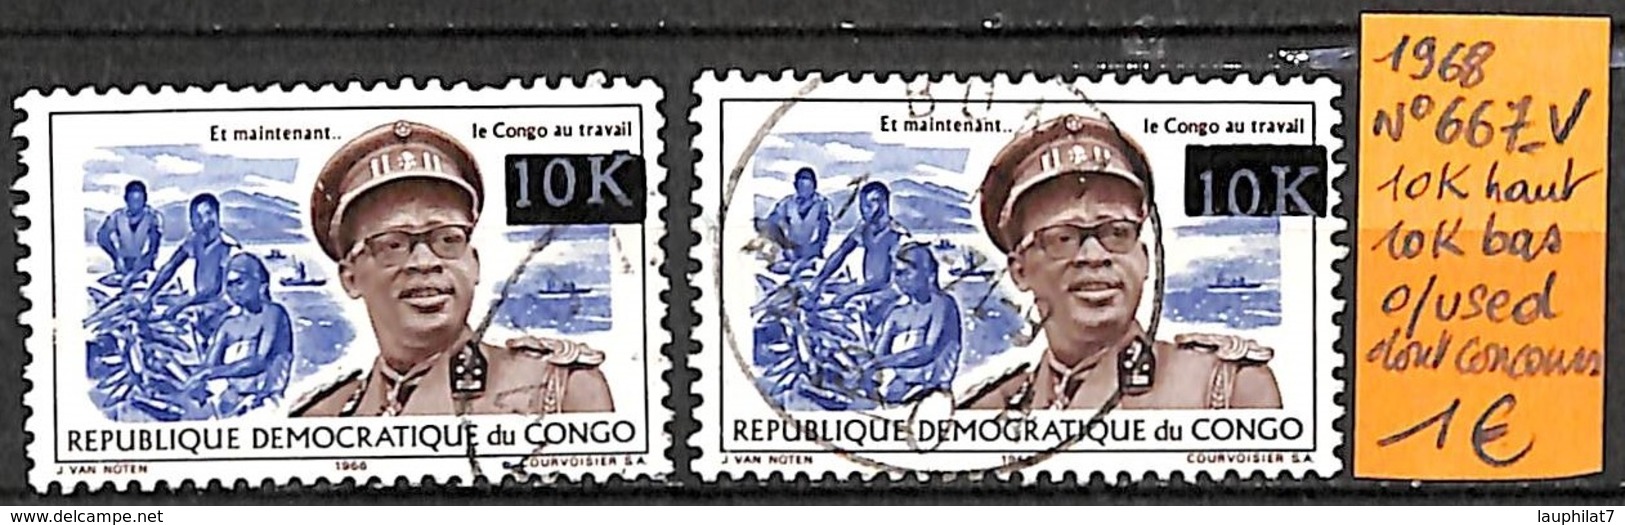 [836332]TB//O/Used-RD Congo 1968 - N° 667-VAR, 10k Haut 10k Bas, Dont Concours - Oblitérés